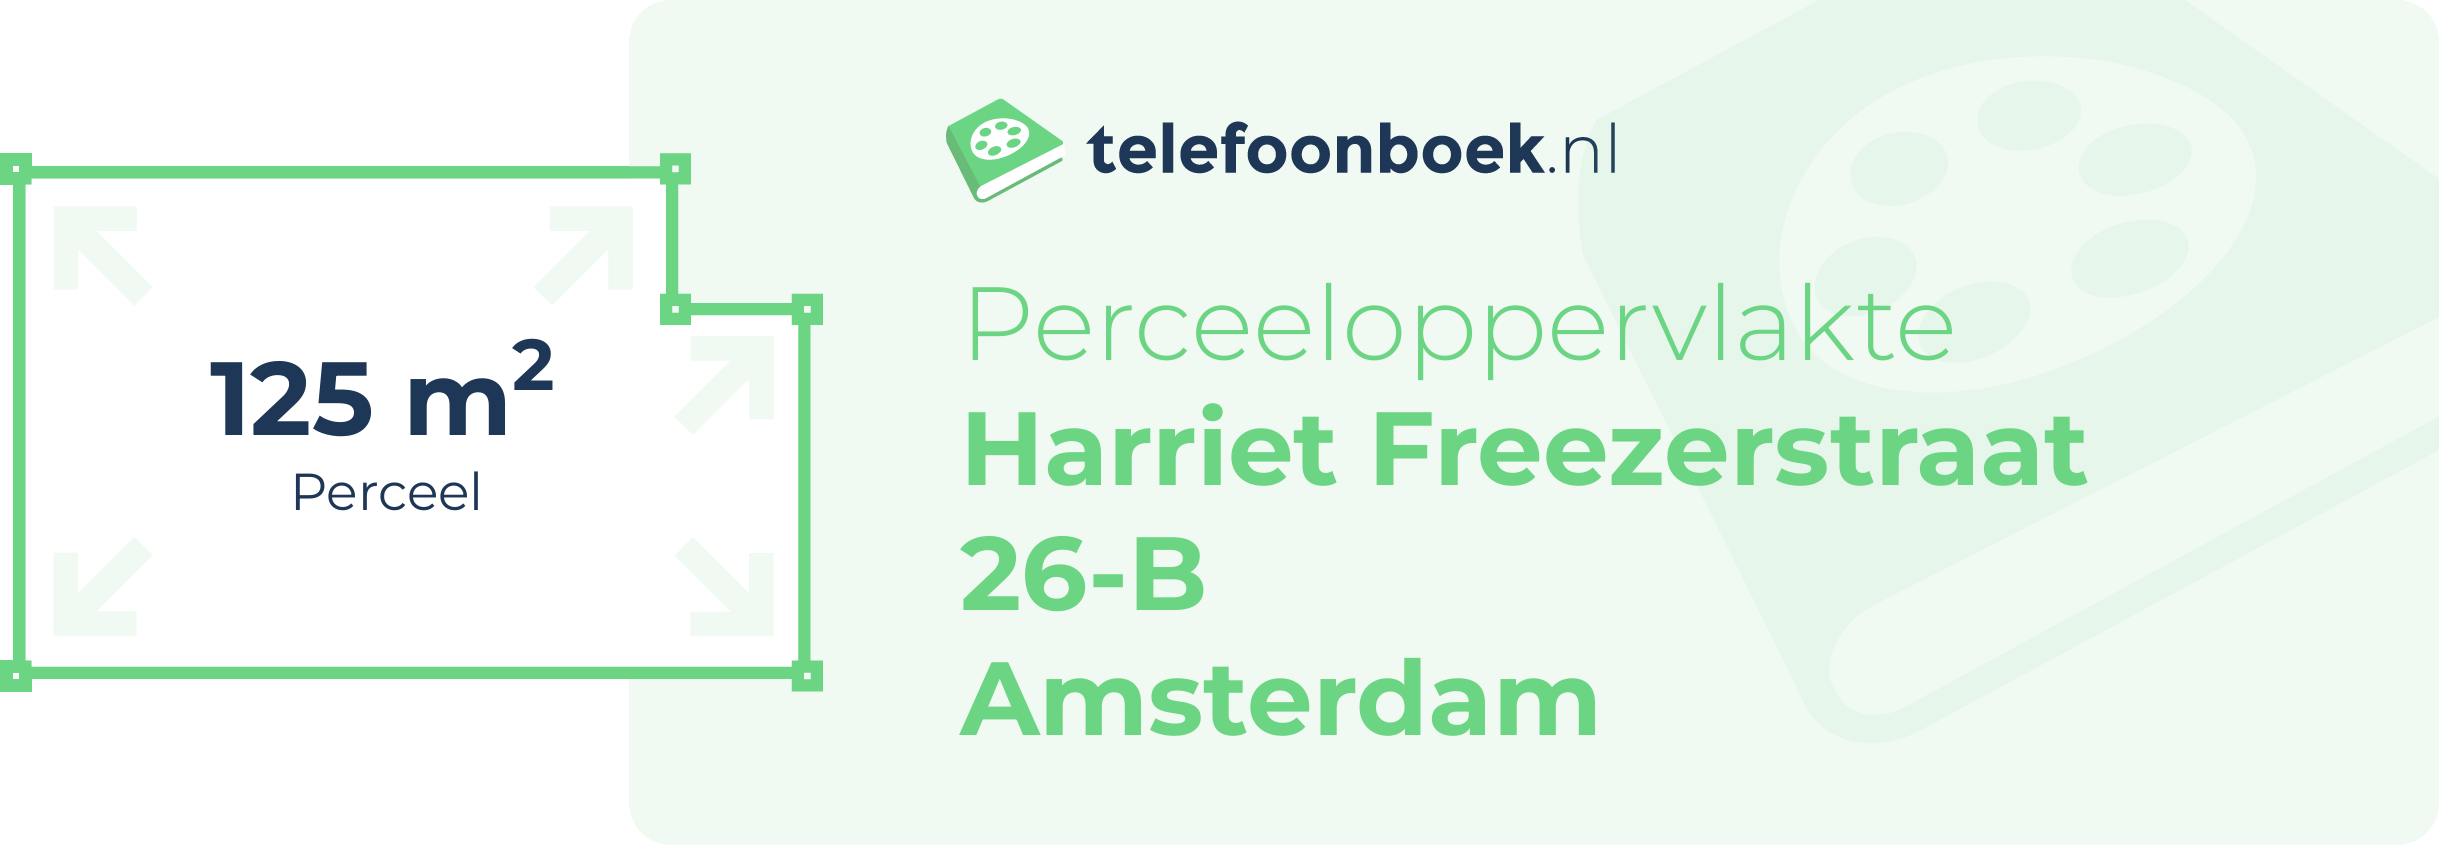 Perceeloppervlakte Harriet Freezerstraat 26-B Amsterdam